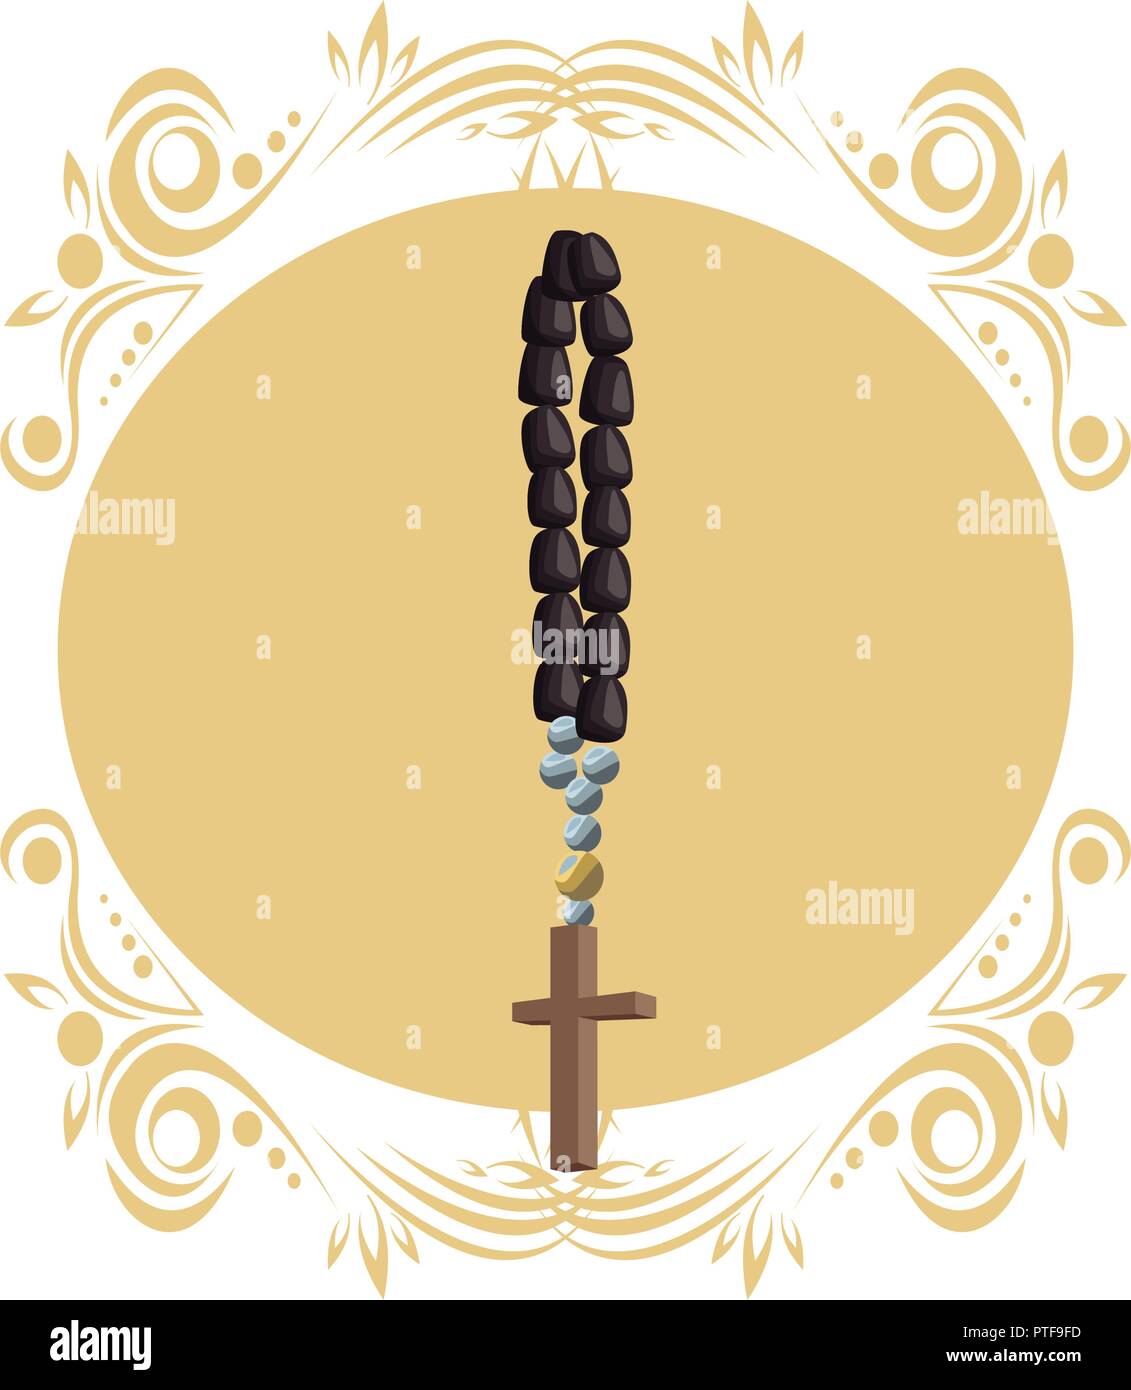 Catholic rosary symbol Stock Vector